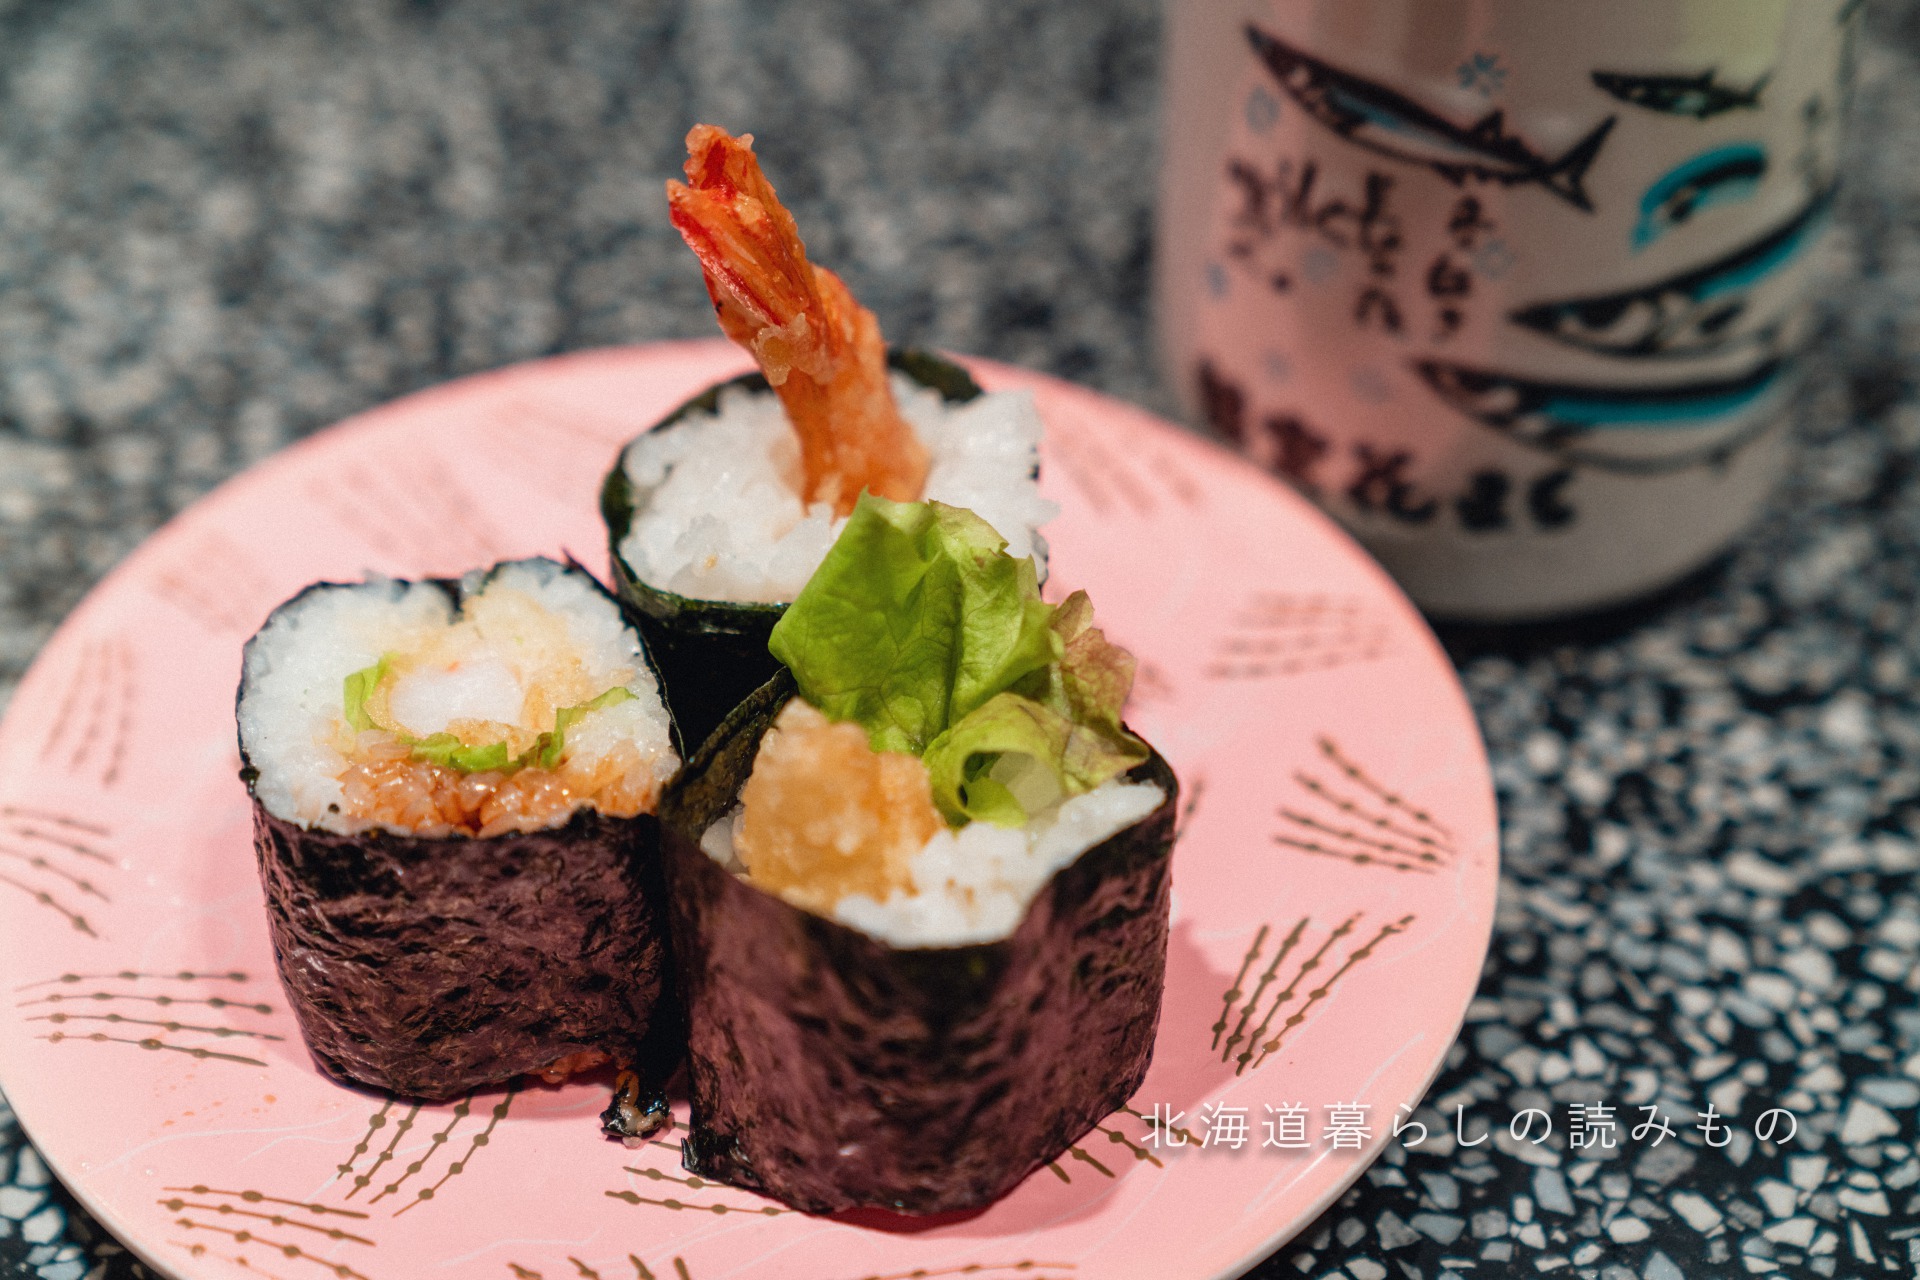 回転寿司 根室花まるのメニュー「大えび天巻」の写真